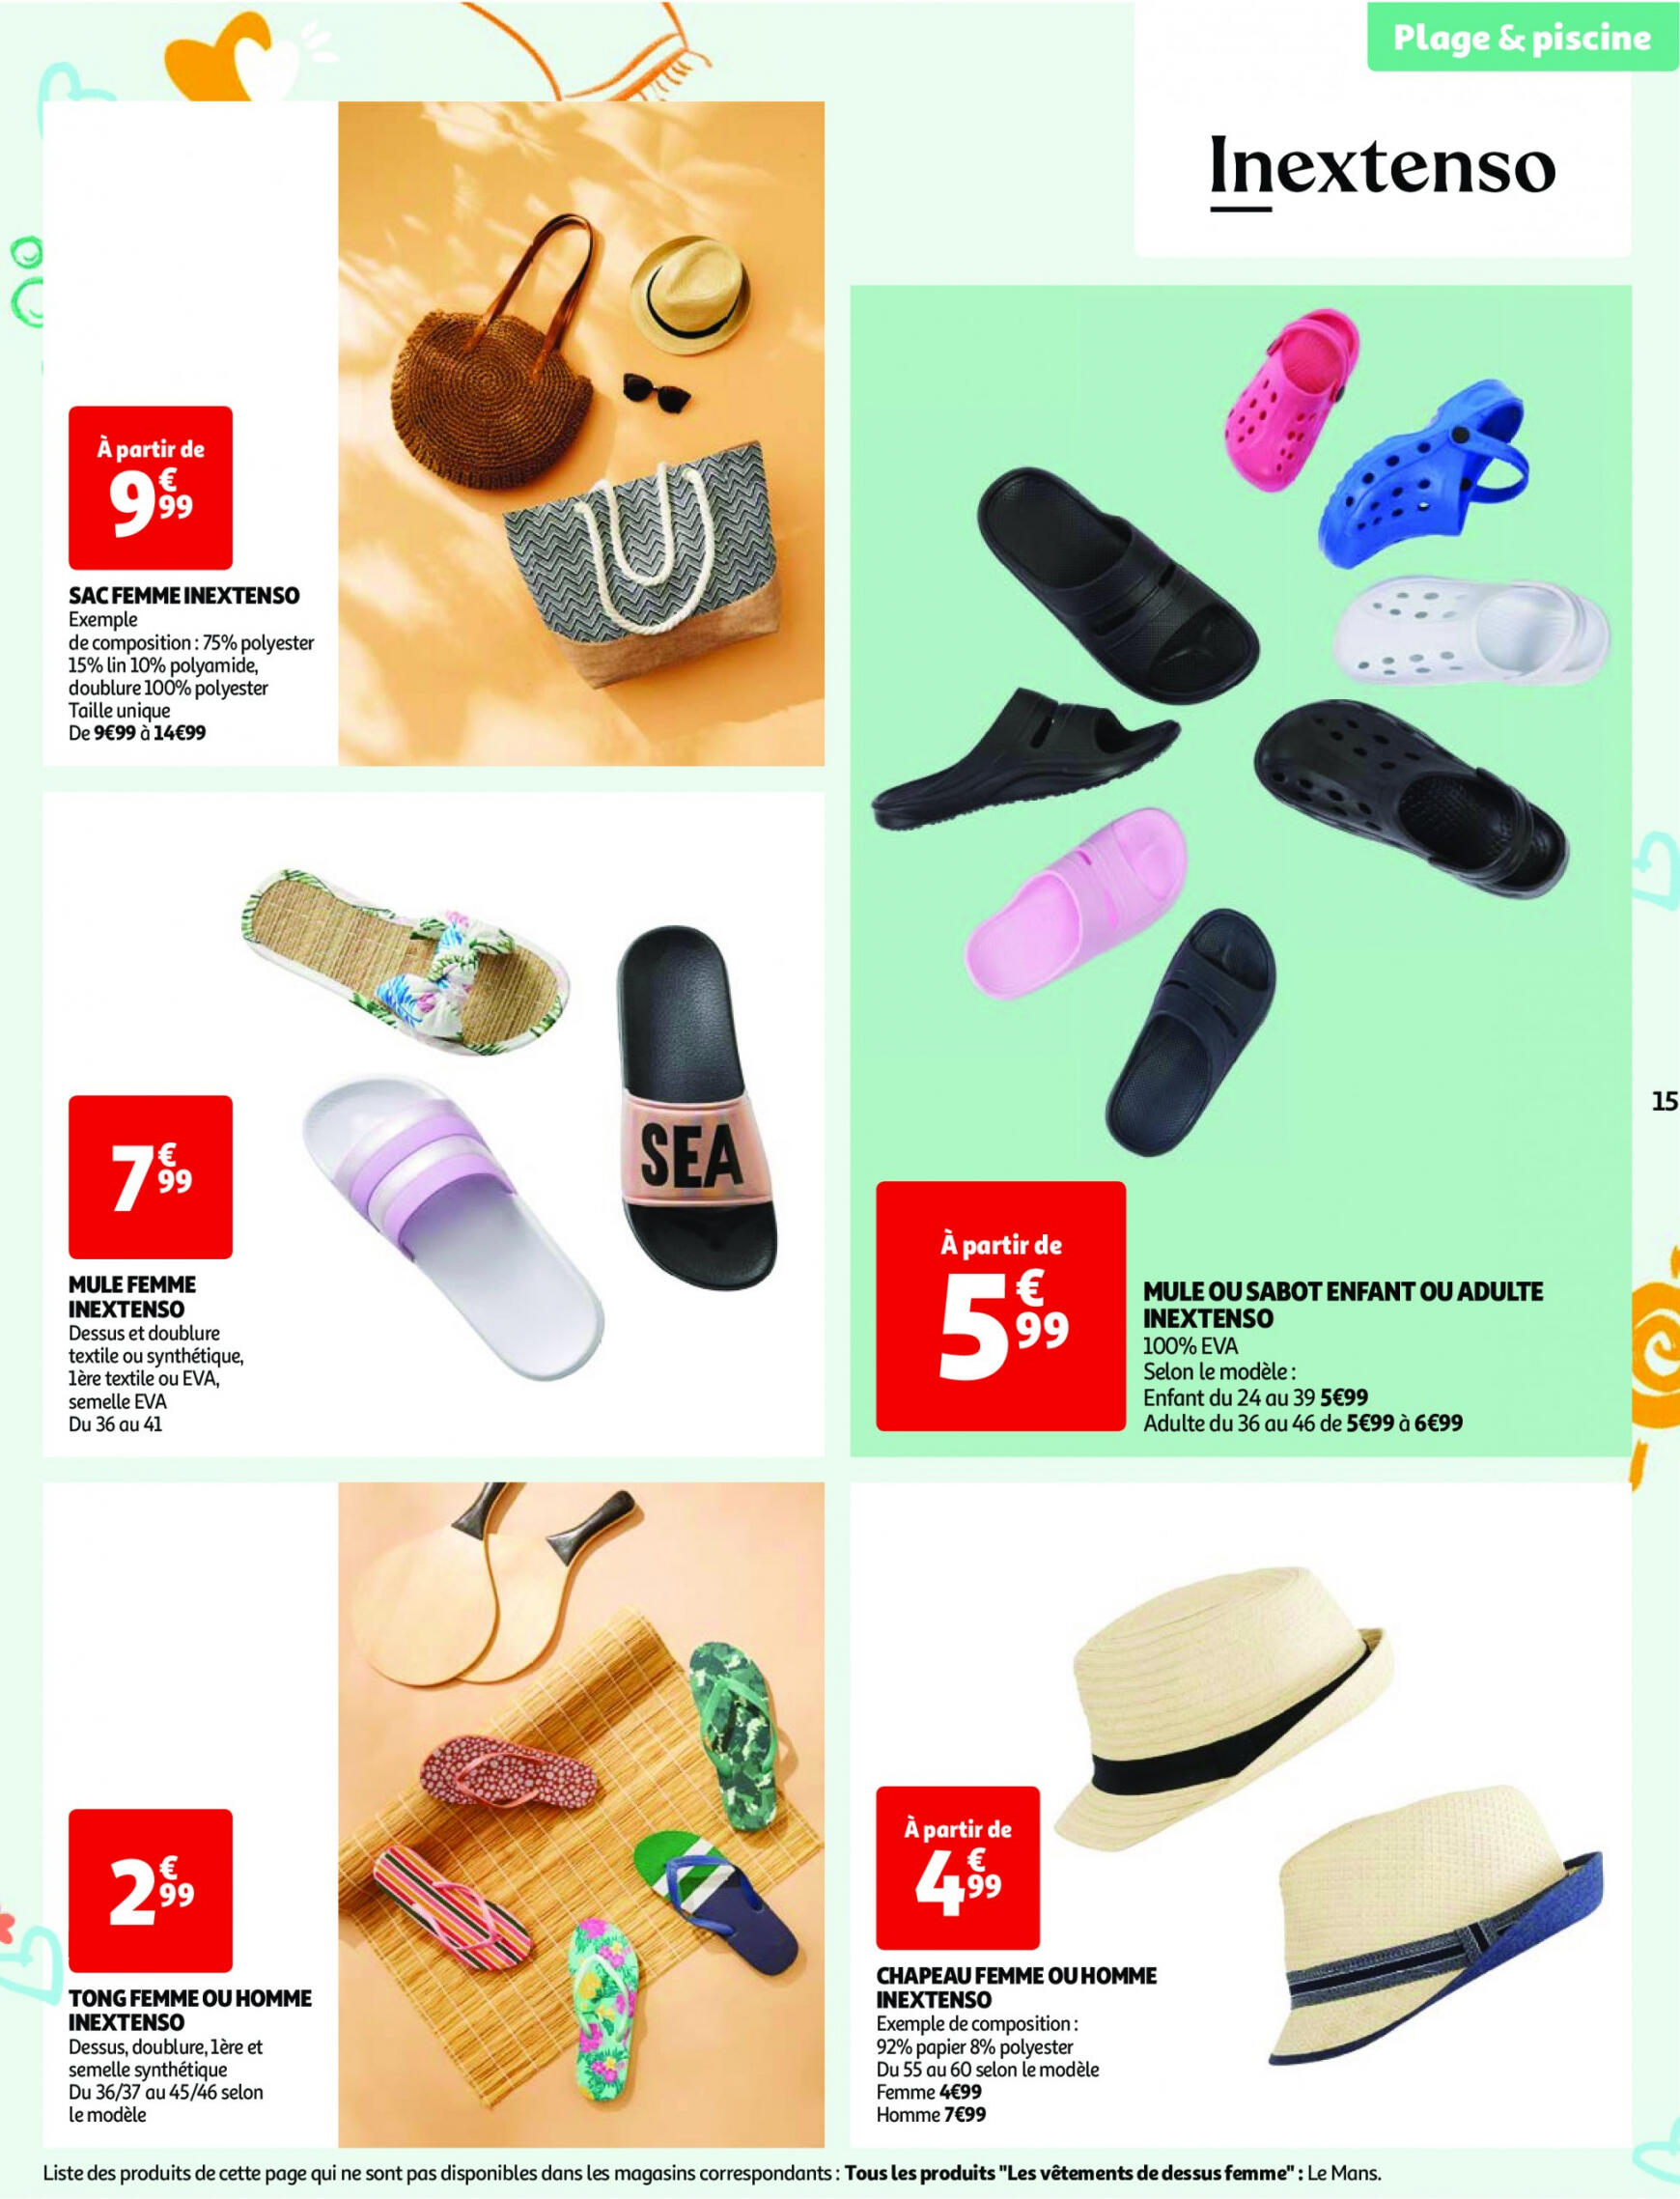 auchan - Auchan - Nos exclusivités Summer pour s'amuser tout l'été folder huidig 14.05. - 15.06. - page: 15